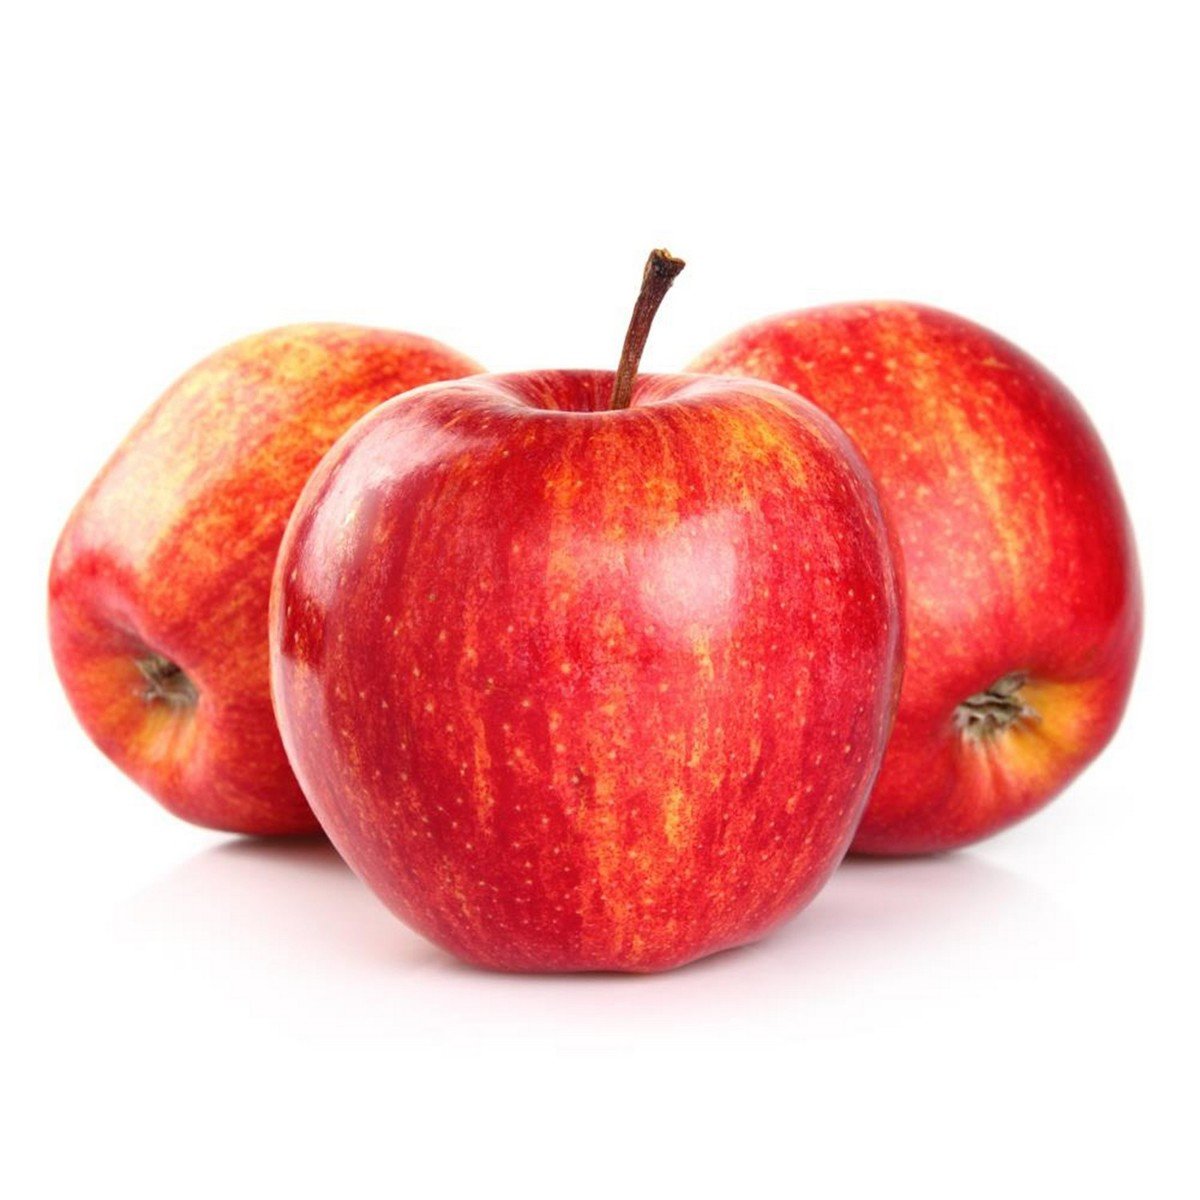 اشتري قم بشراء تفاح روبال جالا أمريكي 1 كجم Online at Best Price من الموقع - من لولو هايبر ماركت Apples في الامارات